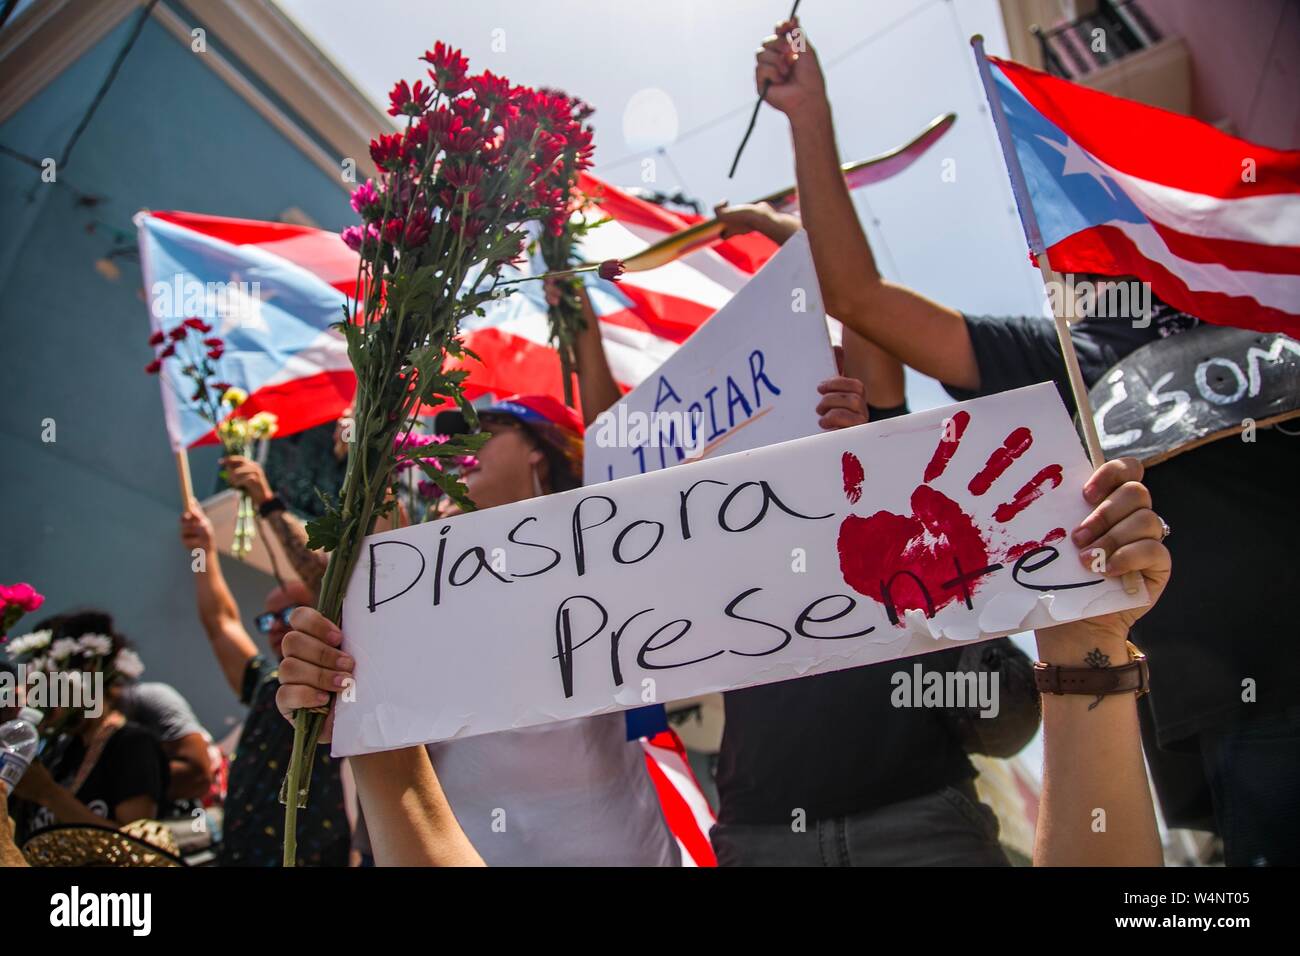 24 Juli 2019, Puerto Rico, San Juan: "Der diaspora Es gibt", sagt ein Demonstrator im Ausland leben in einem Protest vor der Residenz des Gouverneurs Rossello, auch bekannt als La Fortaleza. Die Proteste von einem Korruptionsskandal in der Regierung und die Veröffentlichung von Nachrichten in einer Chat Group, in denen ausgelöst wurden, entsprechend viele, einige Bemerkungen waren feindselig gegenüber Frauen und Homosexuellen und respektlos der zahlreichen Opfer des Hurrikan Maria von 2017. Puerto Rico's Kopf der Regierung, Rossello, ist immer noch im Amt, im Gegensatz zu den anhaltenden Spekulationen über seinen Rücktritt. Foto: Marcos Caballero/dpa Stockfoto